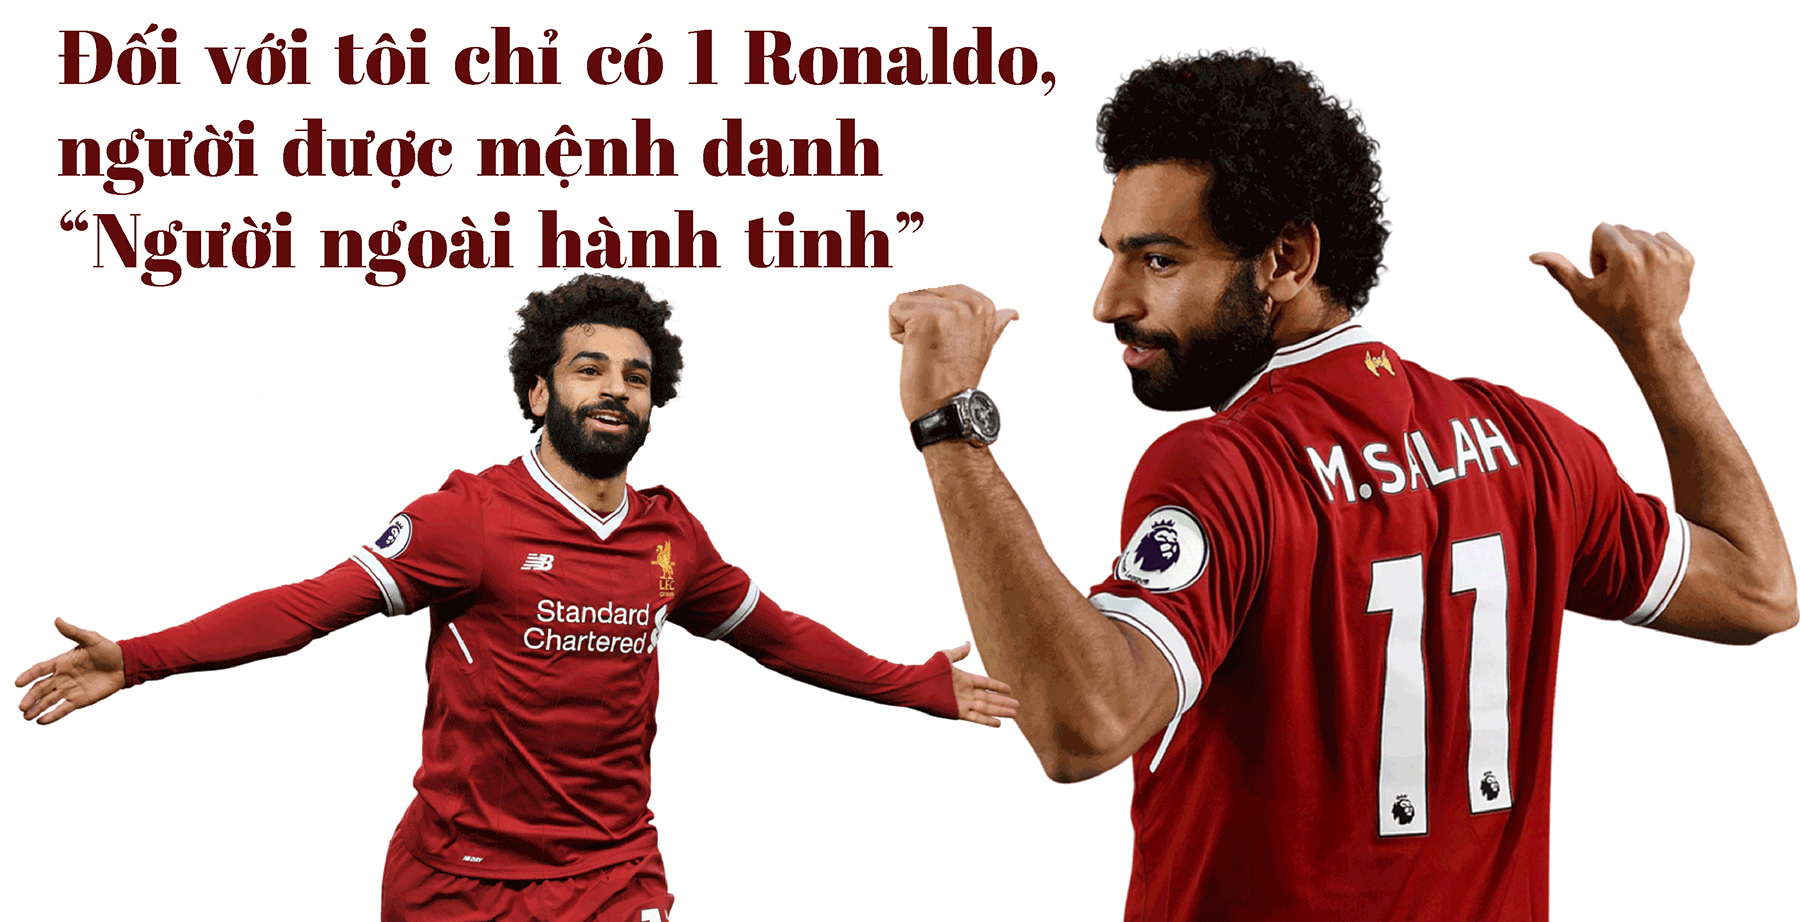 Chung kết cúp C1: Salah và giấc mơ vĩ đại như Ronaldo, tham vọng minh chủ châu Âu - 4